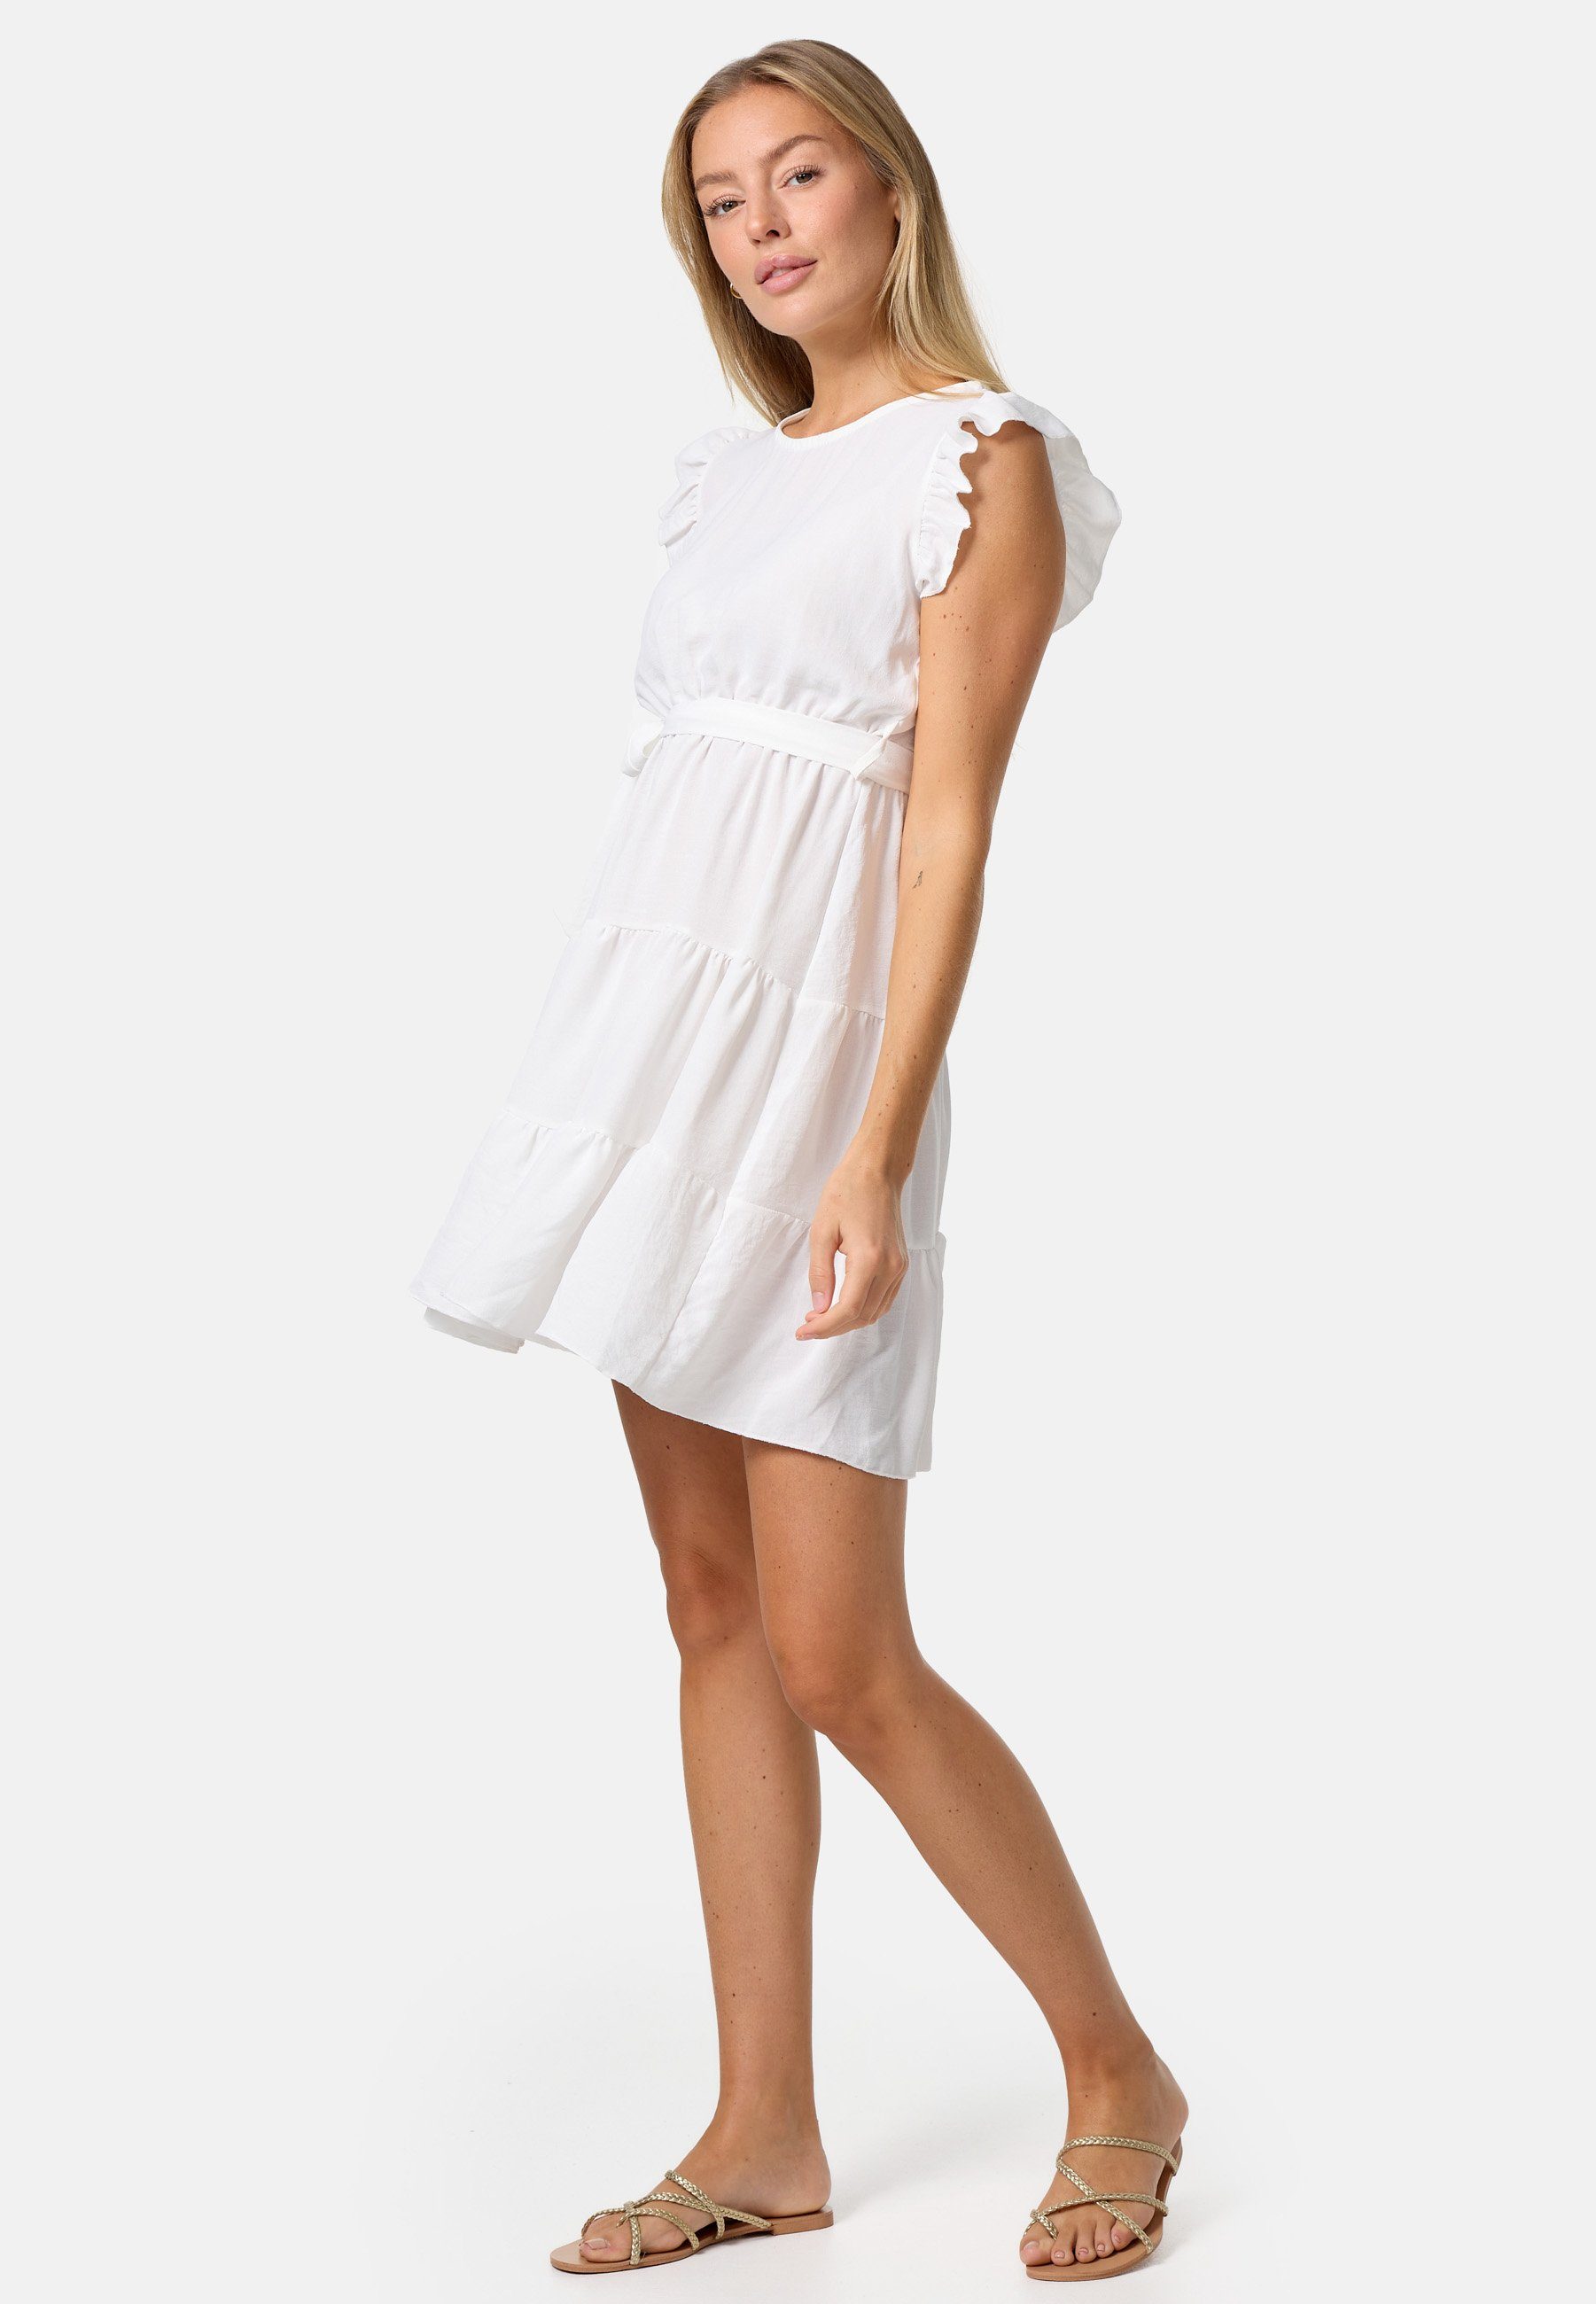 PM SELECTED Minikleid PM-27 Weiß (Sommerkleid in Rüschen Kleid Einheitsgröße) mit Midi